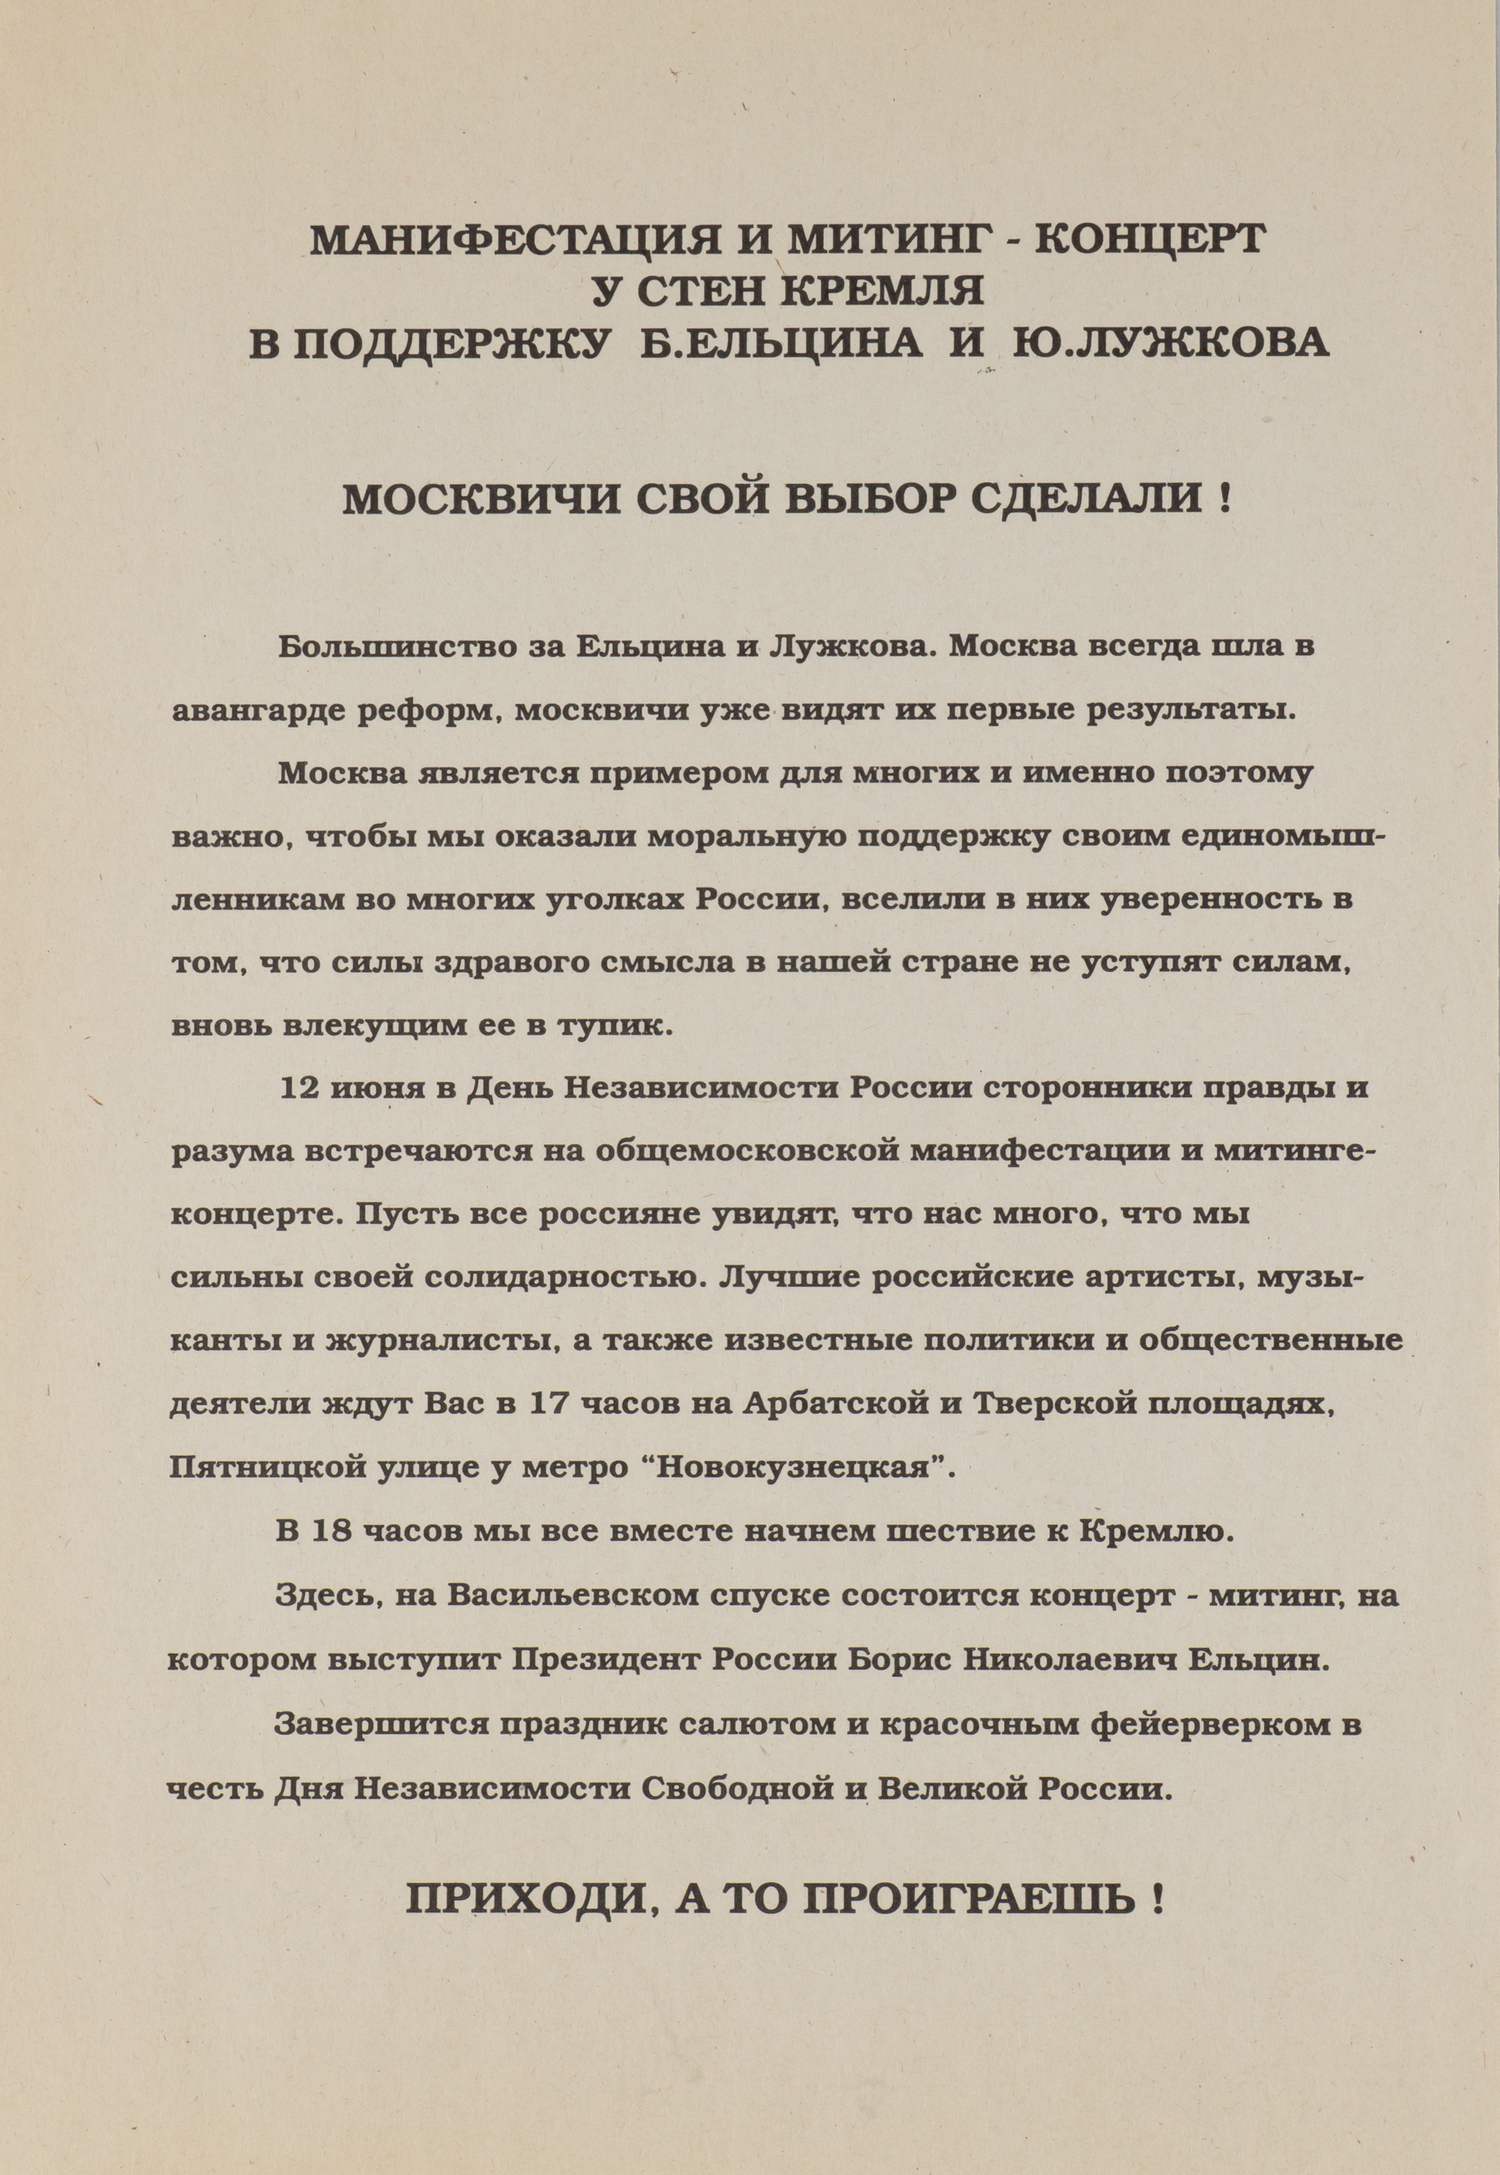 Листовка с информацией о митинге в поддержку Ельцина и Лужкова в Москве. 1996.